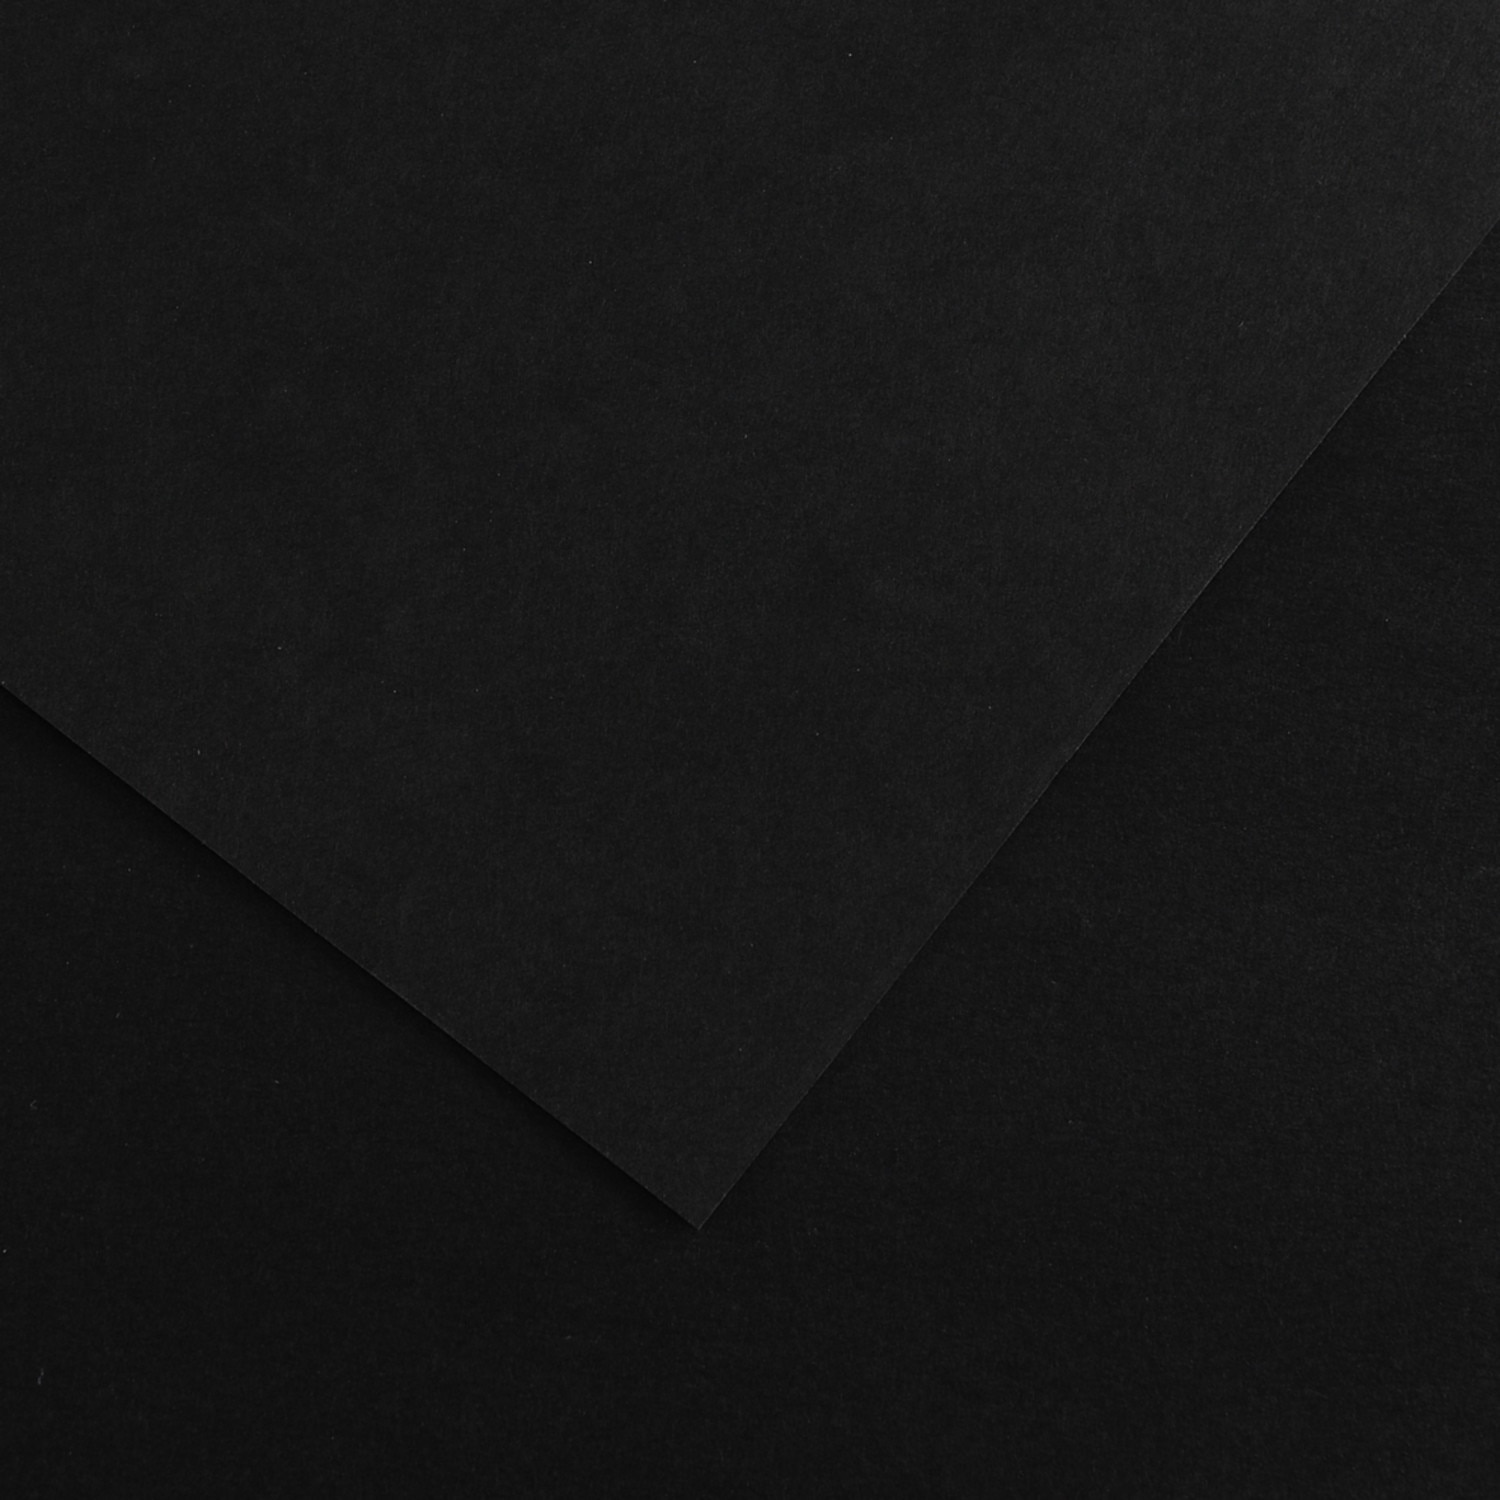 Canson Colorline Paper, 19" x 25", Ebony Black, 10 Sheets/Pkg.